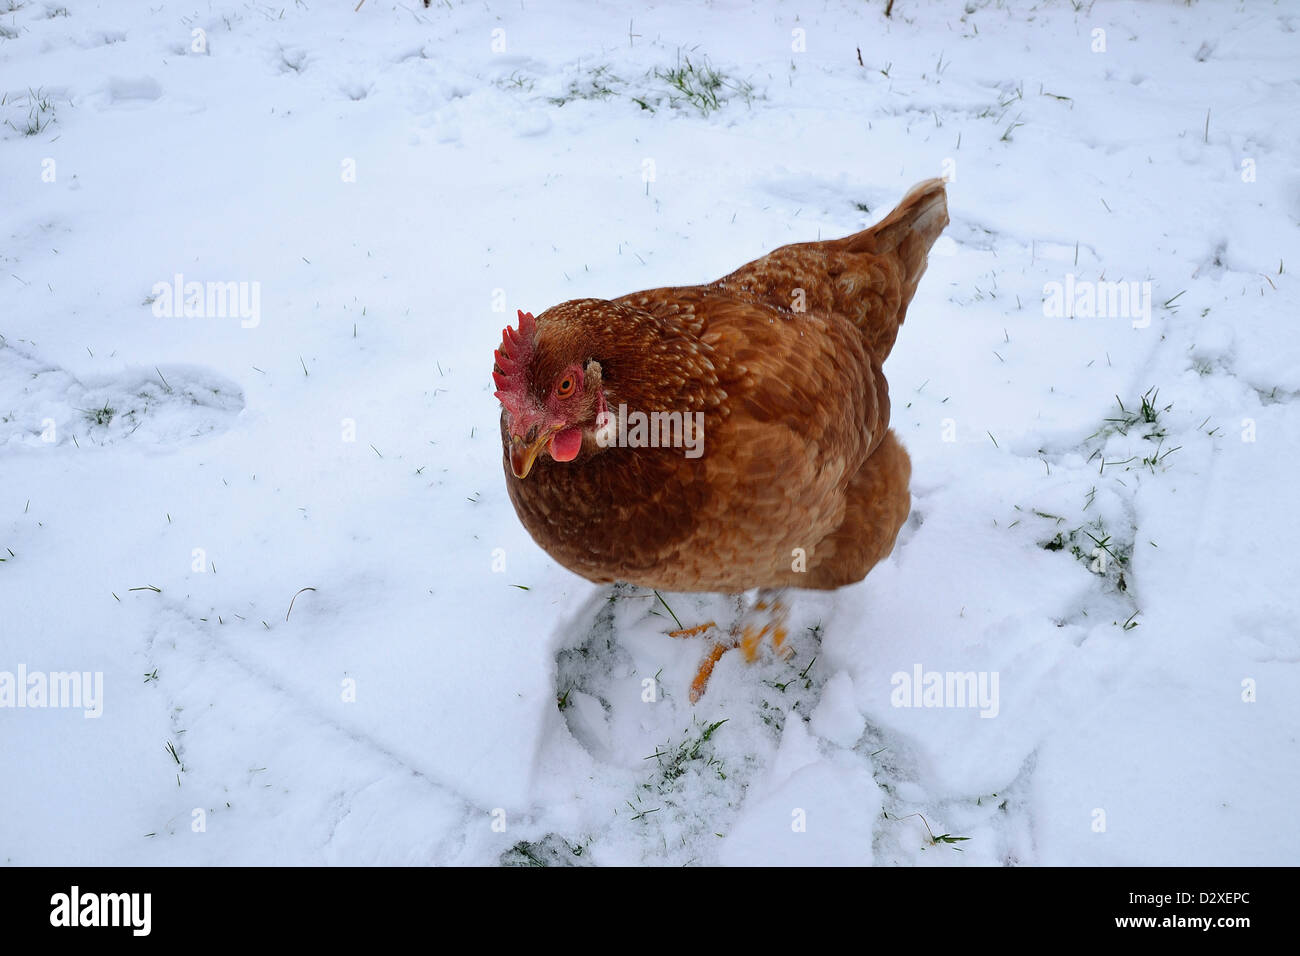 La poule domestique (Gallus gallus), Russet hen hen, ferme, marcher dans la neige du jardin, en janvier. Banque D'Images